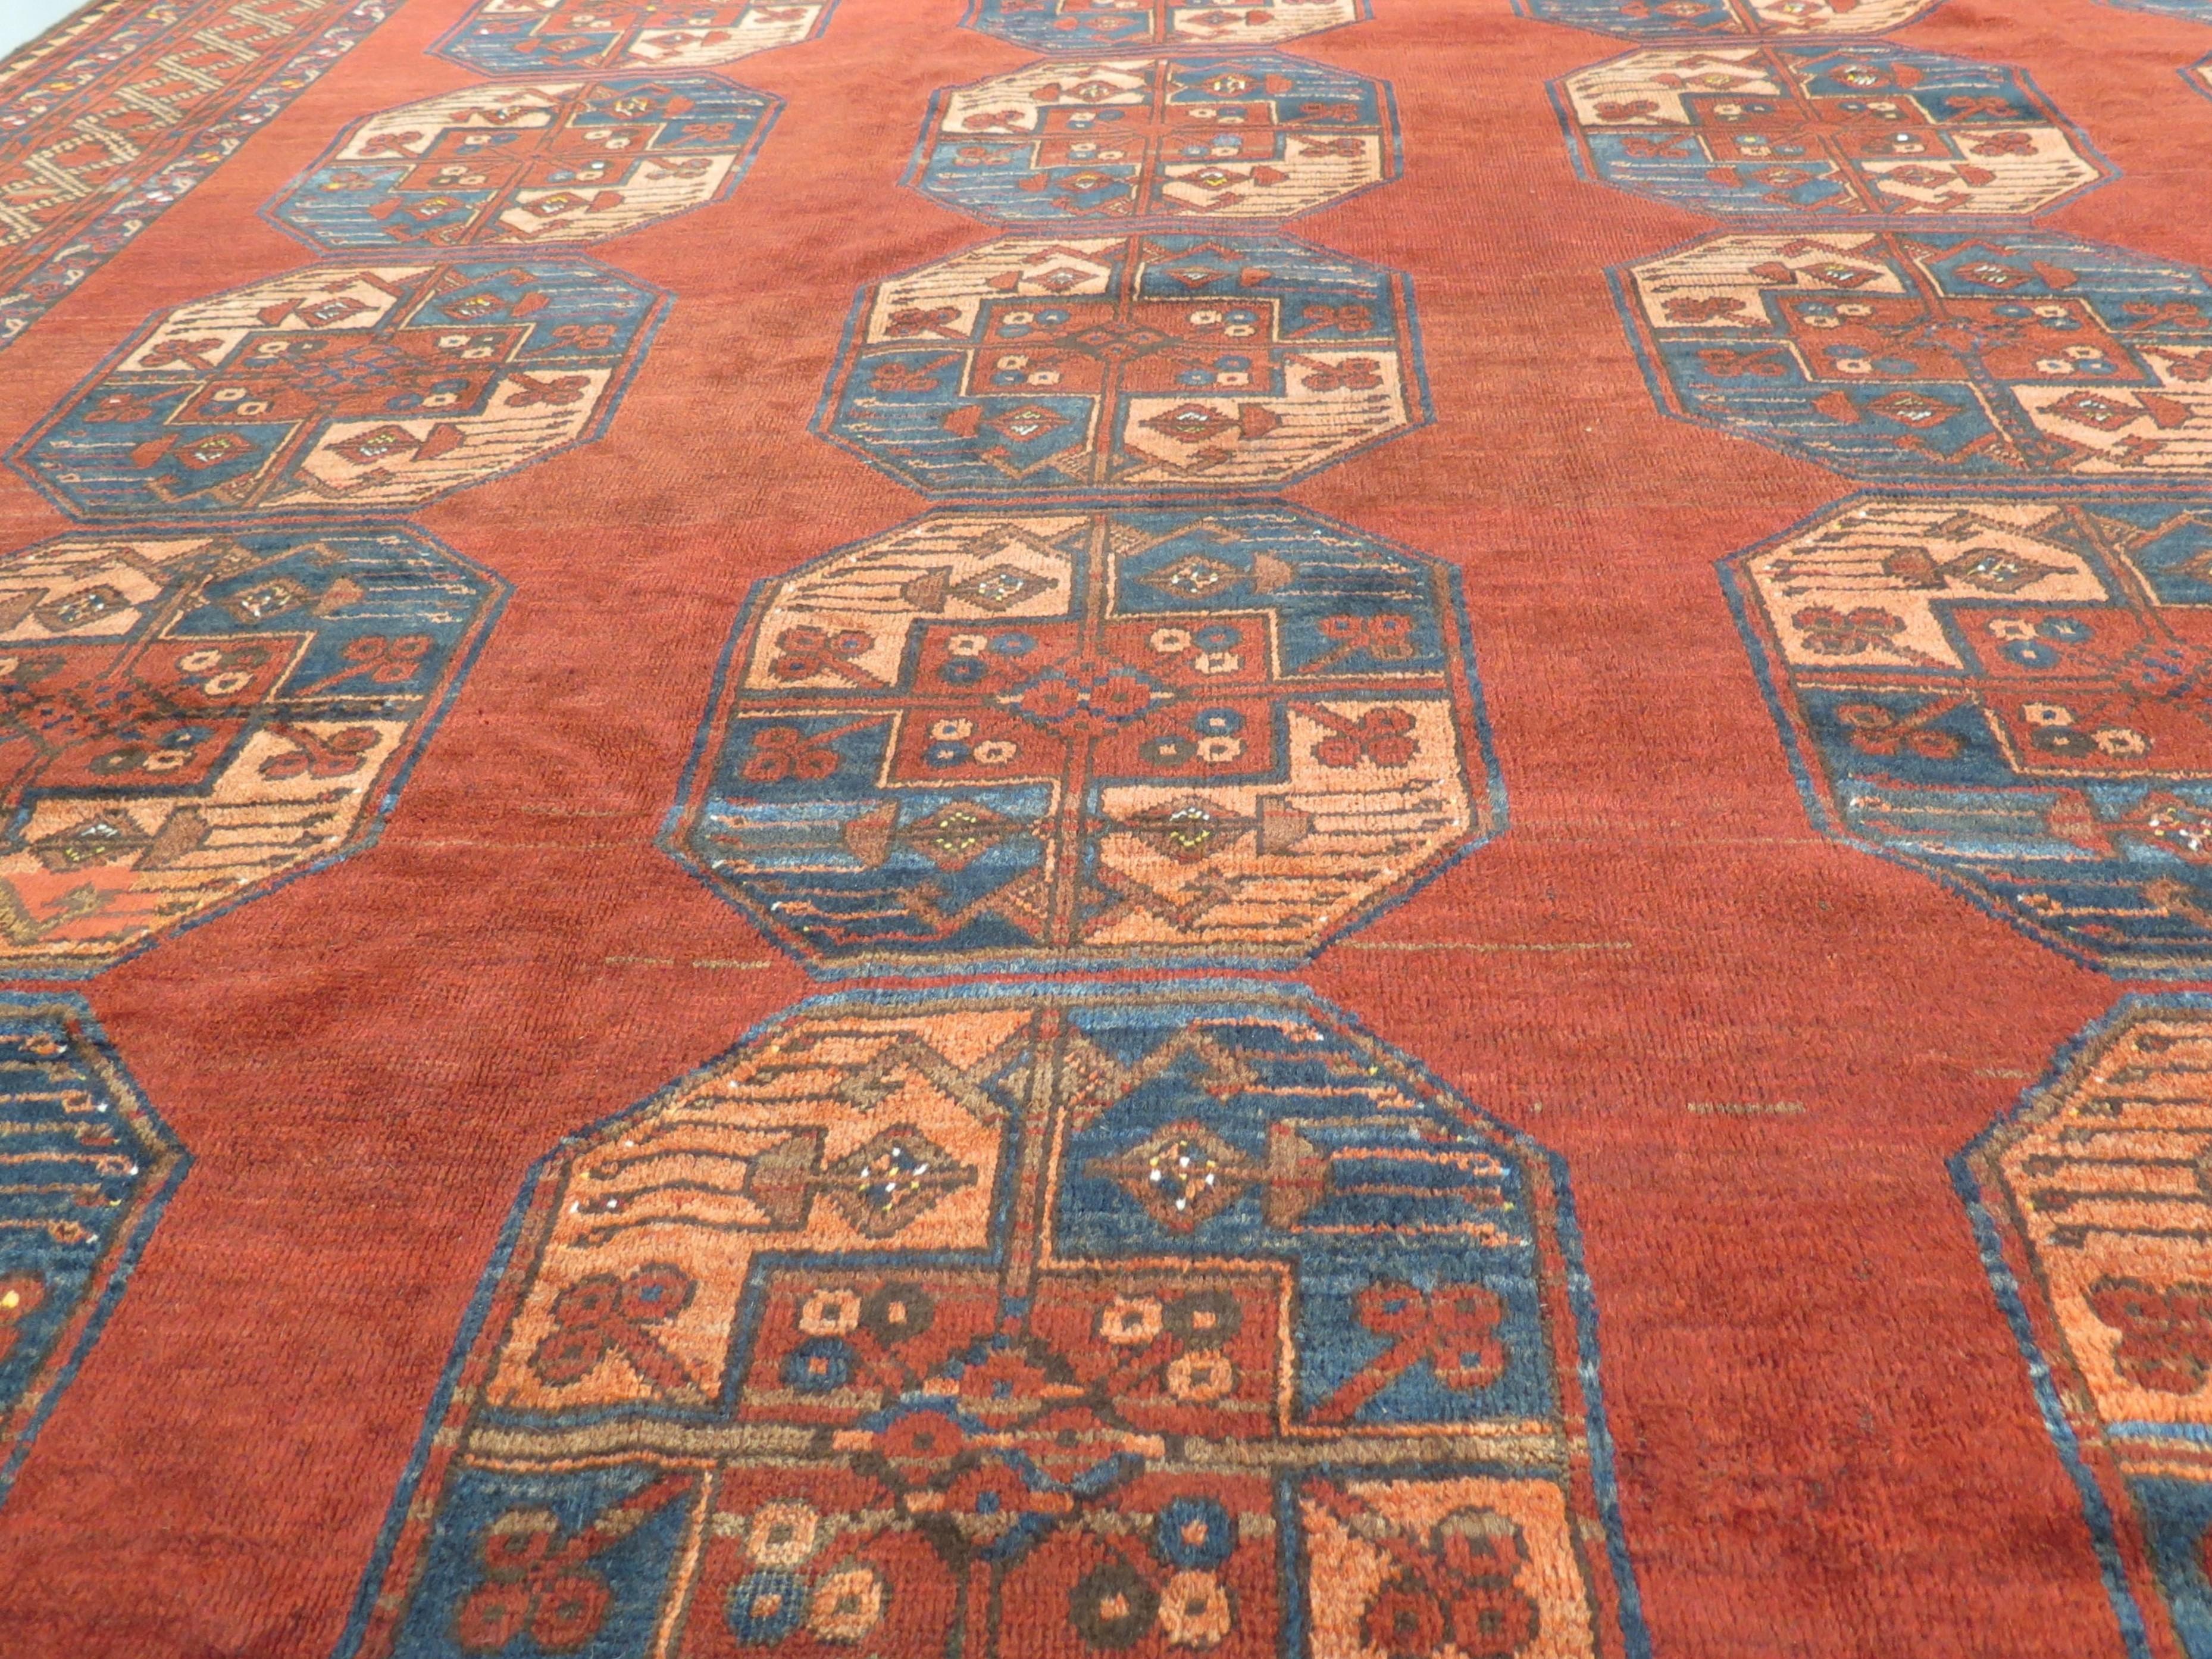 Der zentralasiatische Ersari-Stamm, der in Südturkmenistan und Nordafghanistan ansässig ist, hat eine lange und reiche Geschichte in der Welt der antiken Teppiche. Ihre Webarbeiten werden wegen ihrer Qualität, ihrer reichen Farbpalette und ihrer